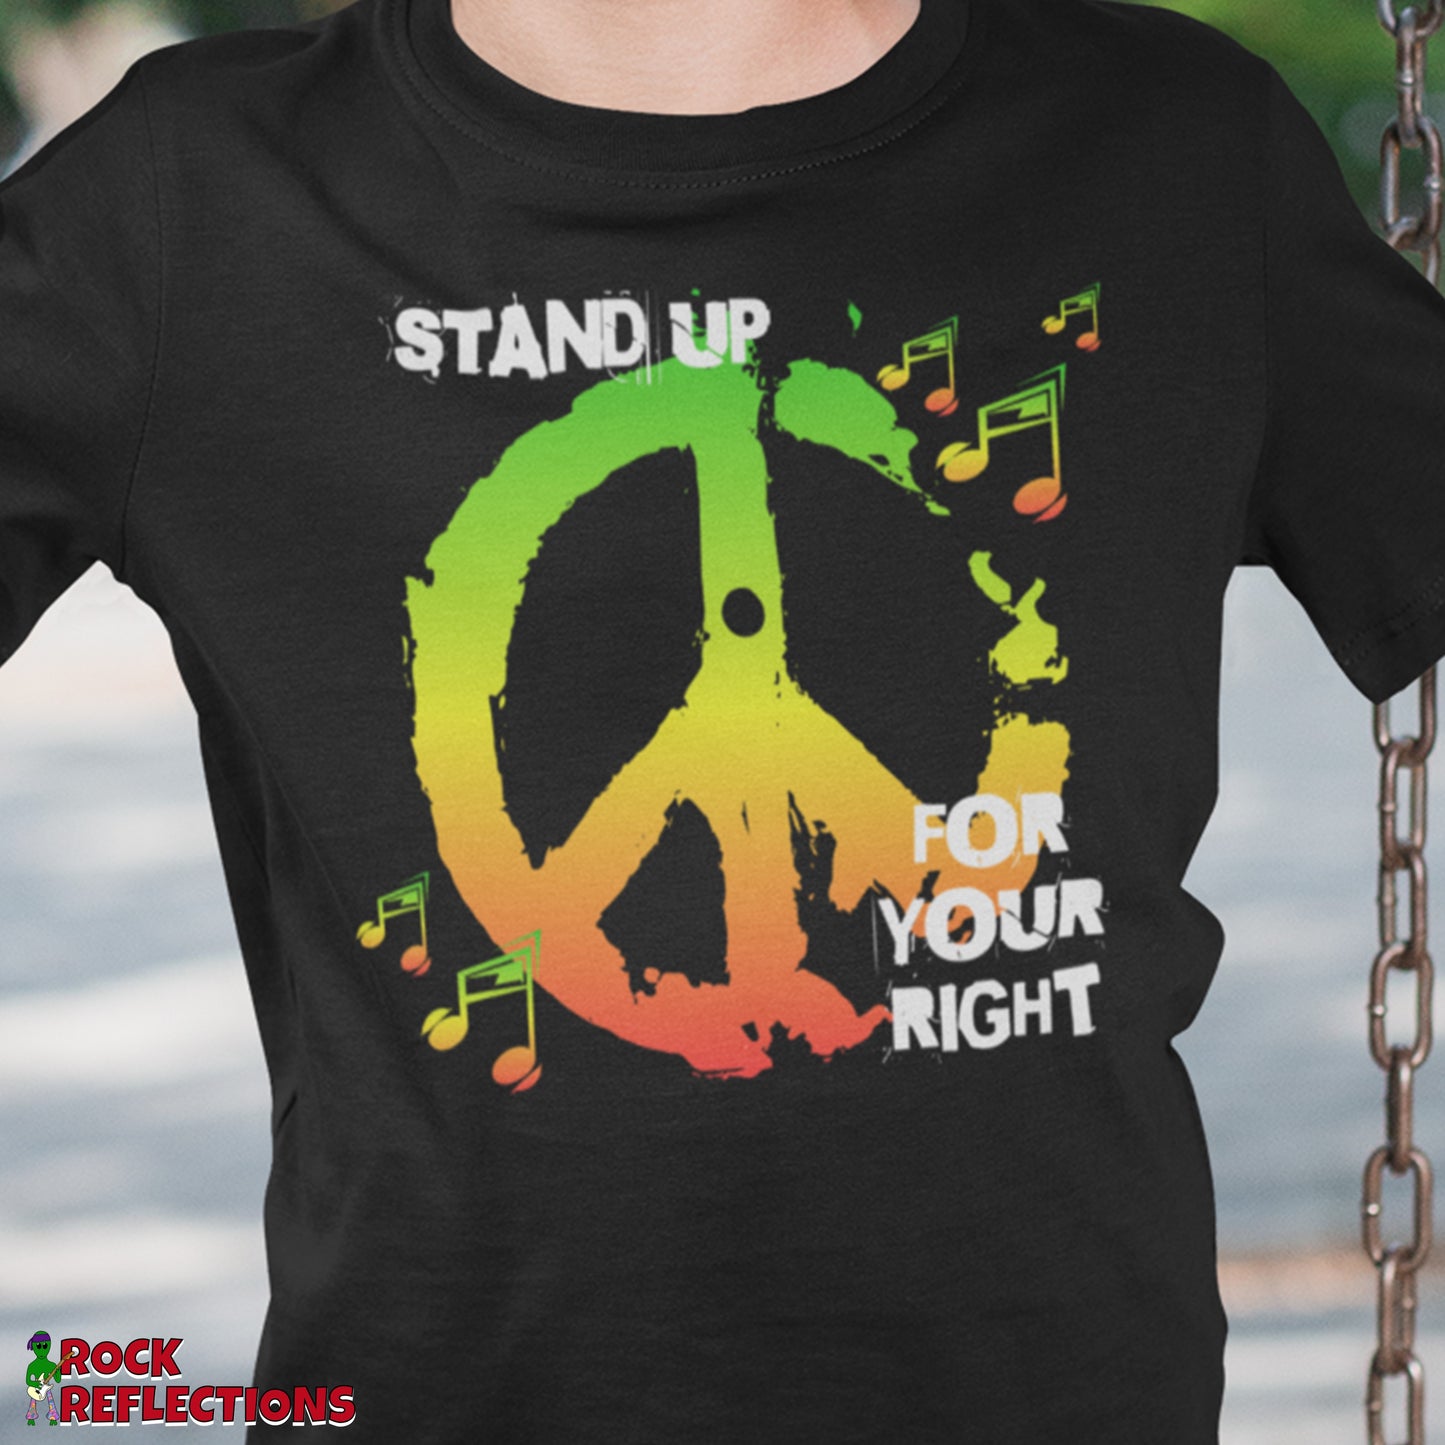 Stand Up T-Shirt SPOD